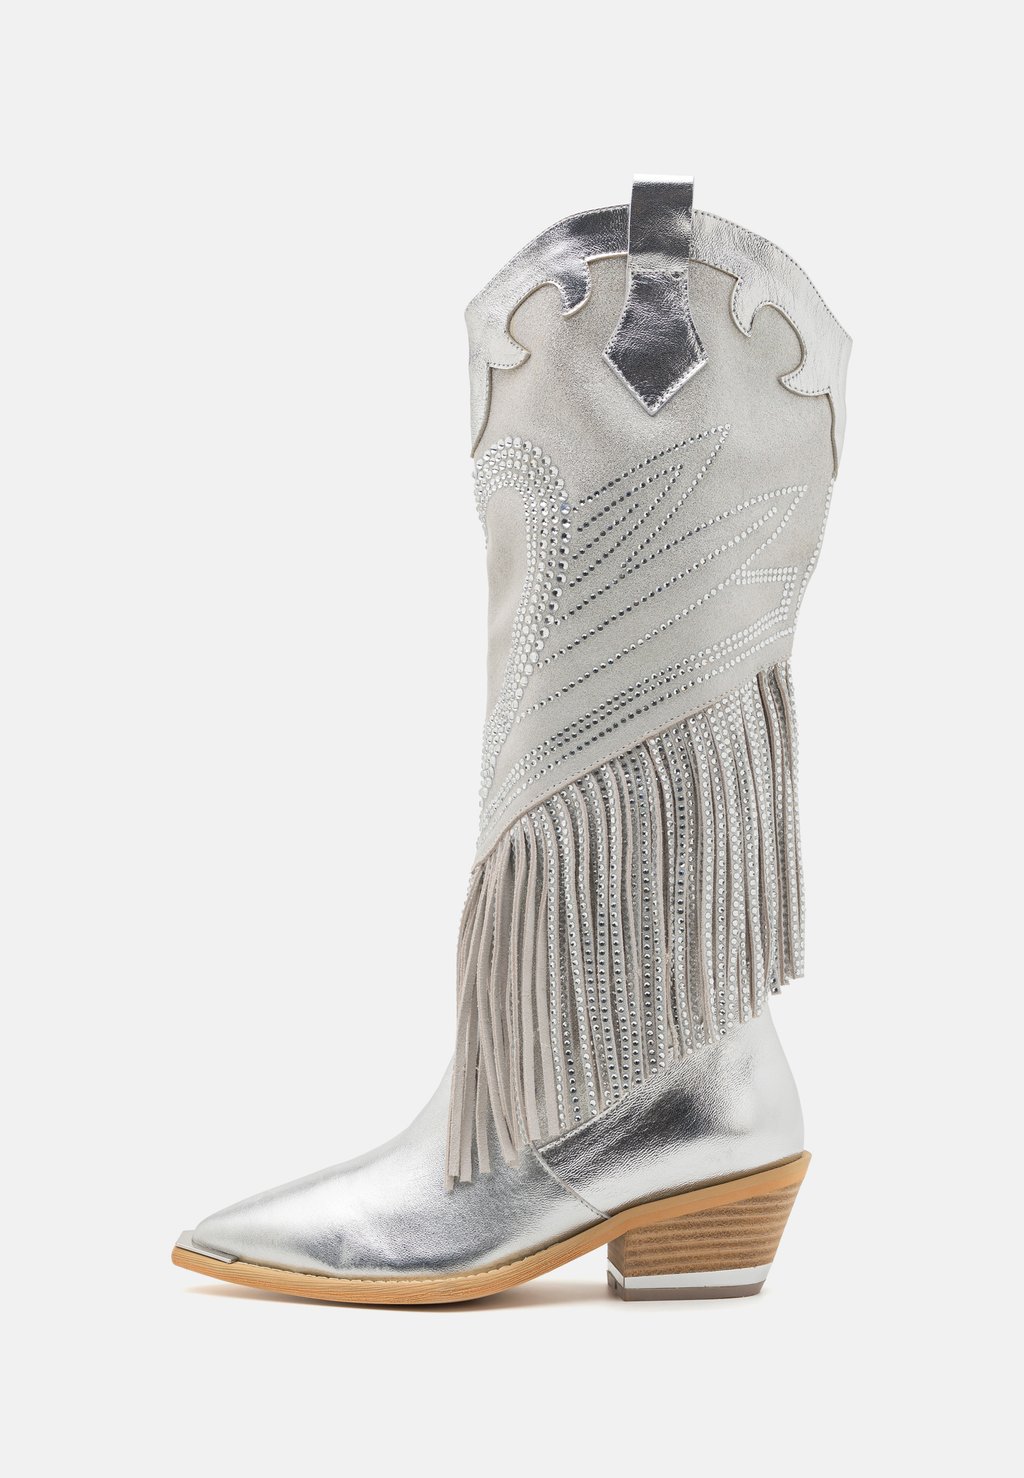 Техасские/байкерские ботинки Alma en Pena, серебро техасские байкерские ботинки alma en pena белые